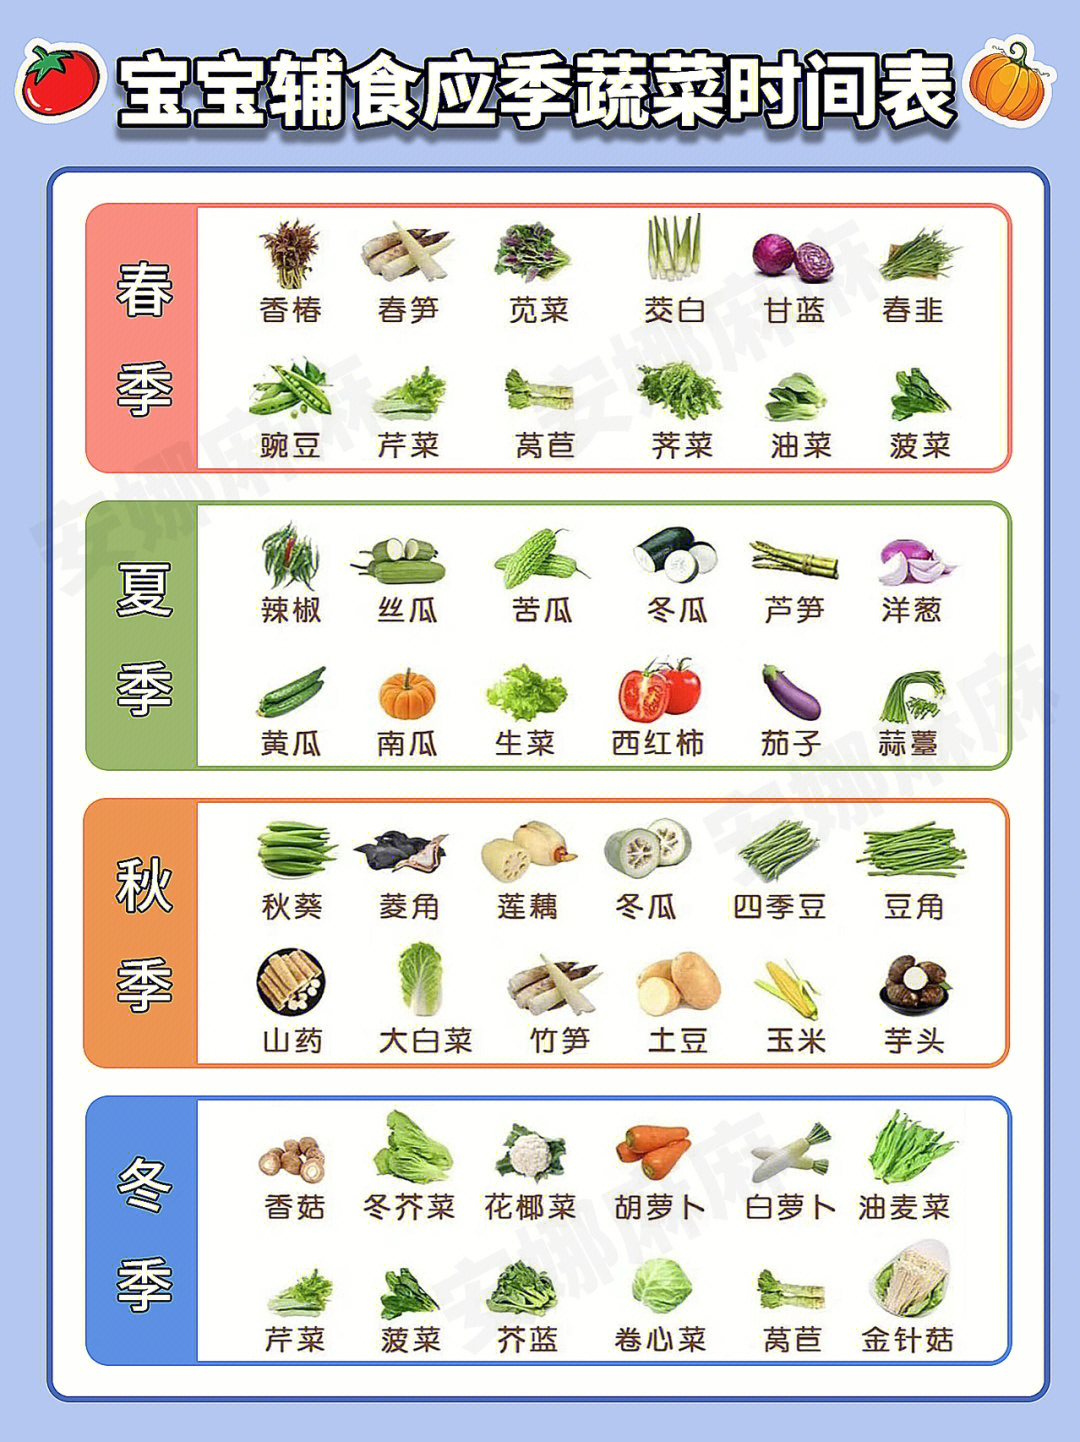 时令蔬菜一览表图表图片